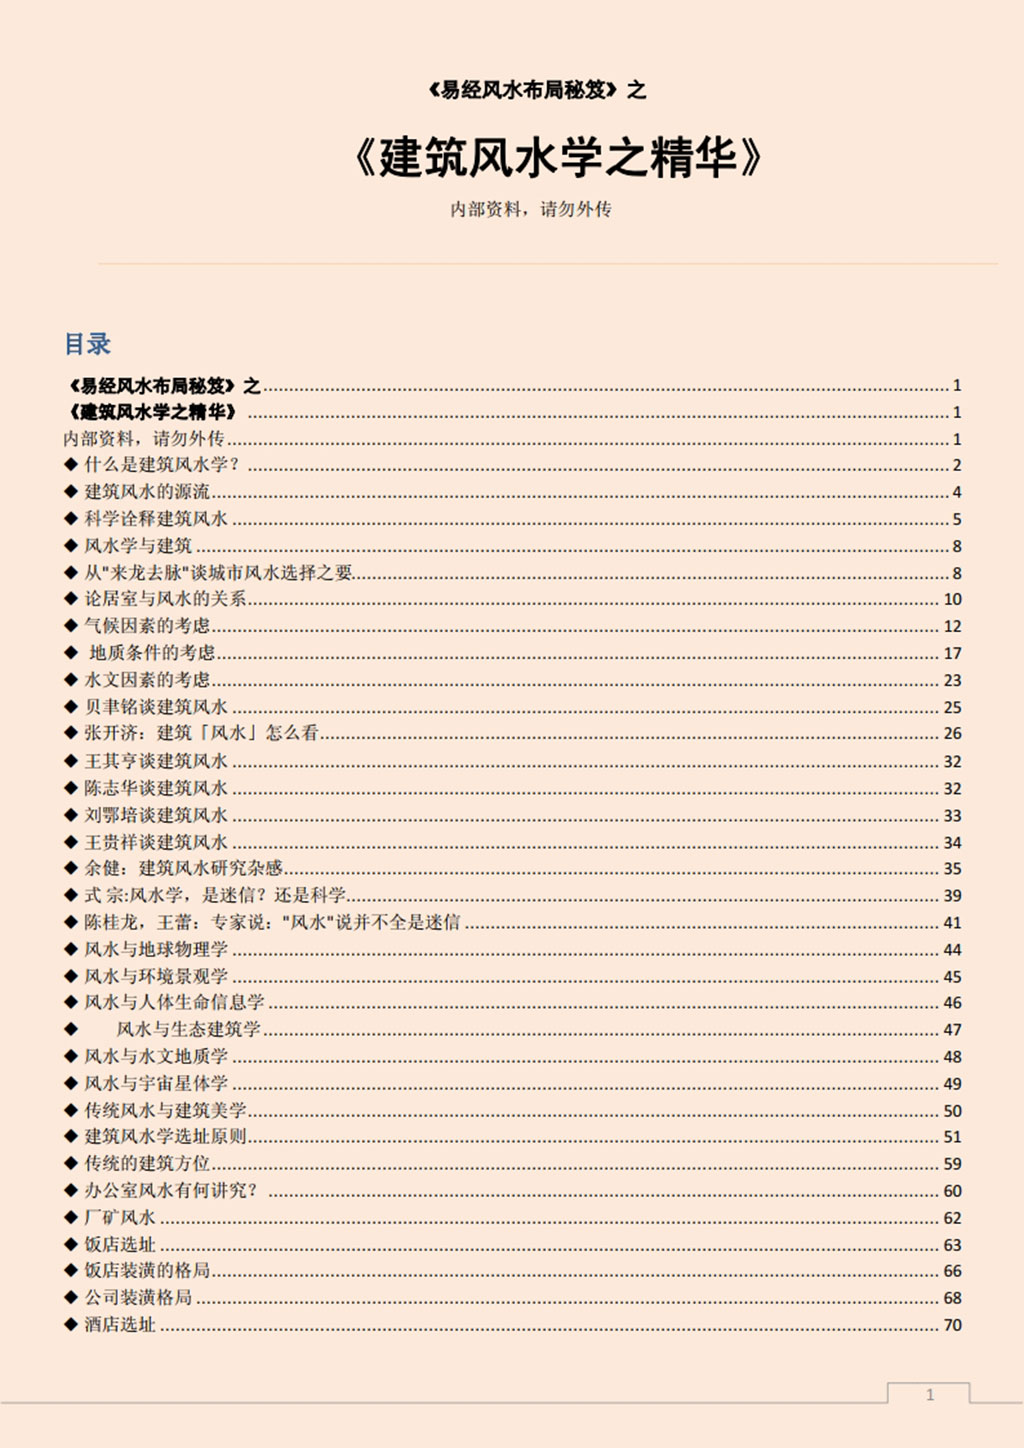 易经风水布局秘笈之《建筑风水学之精华》.pdf